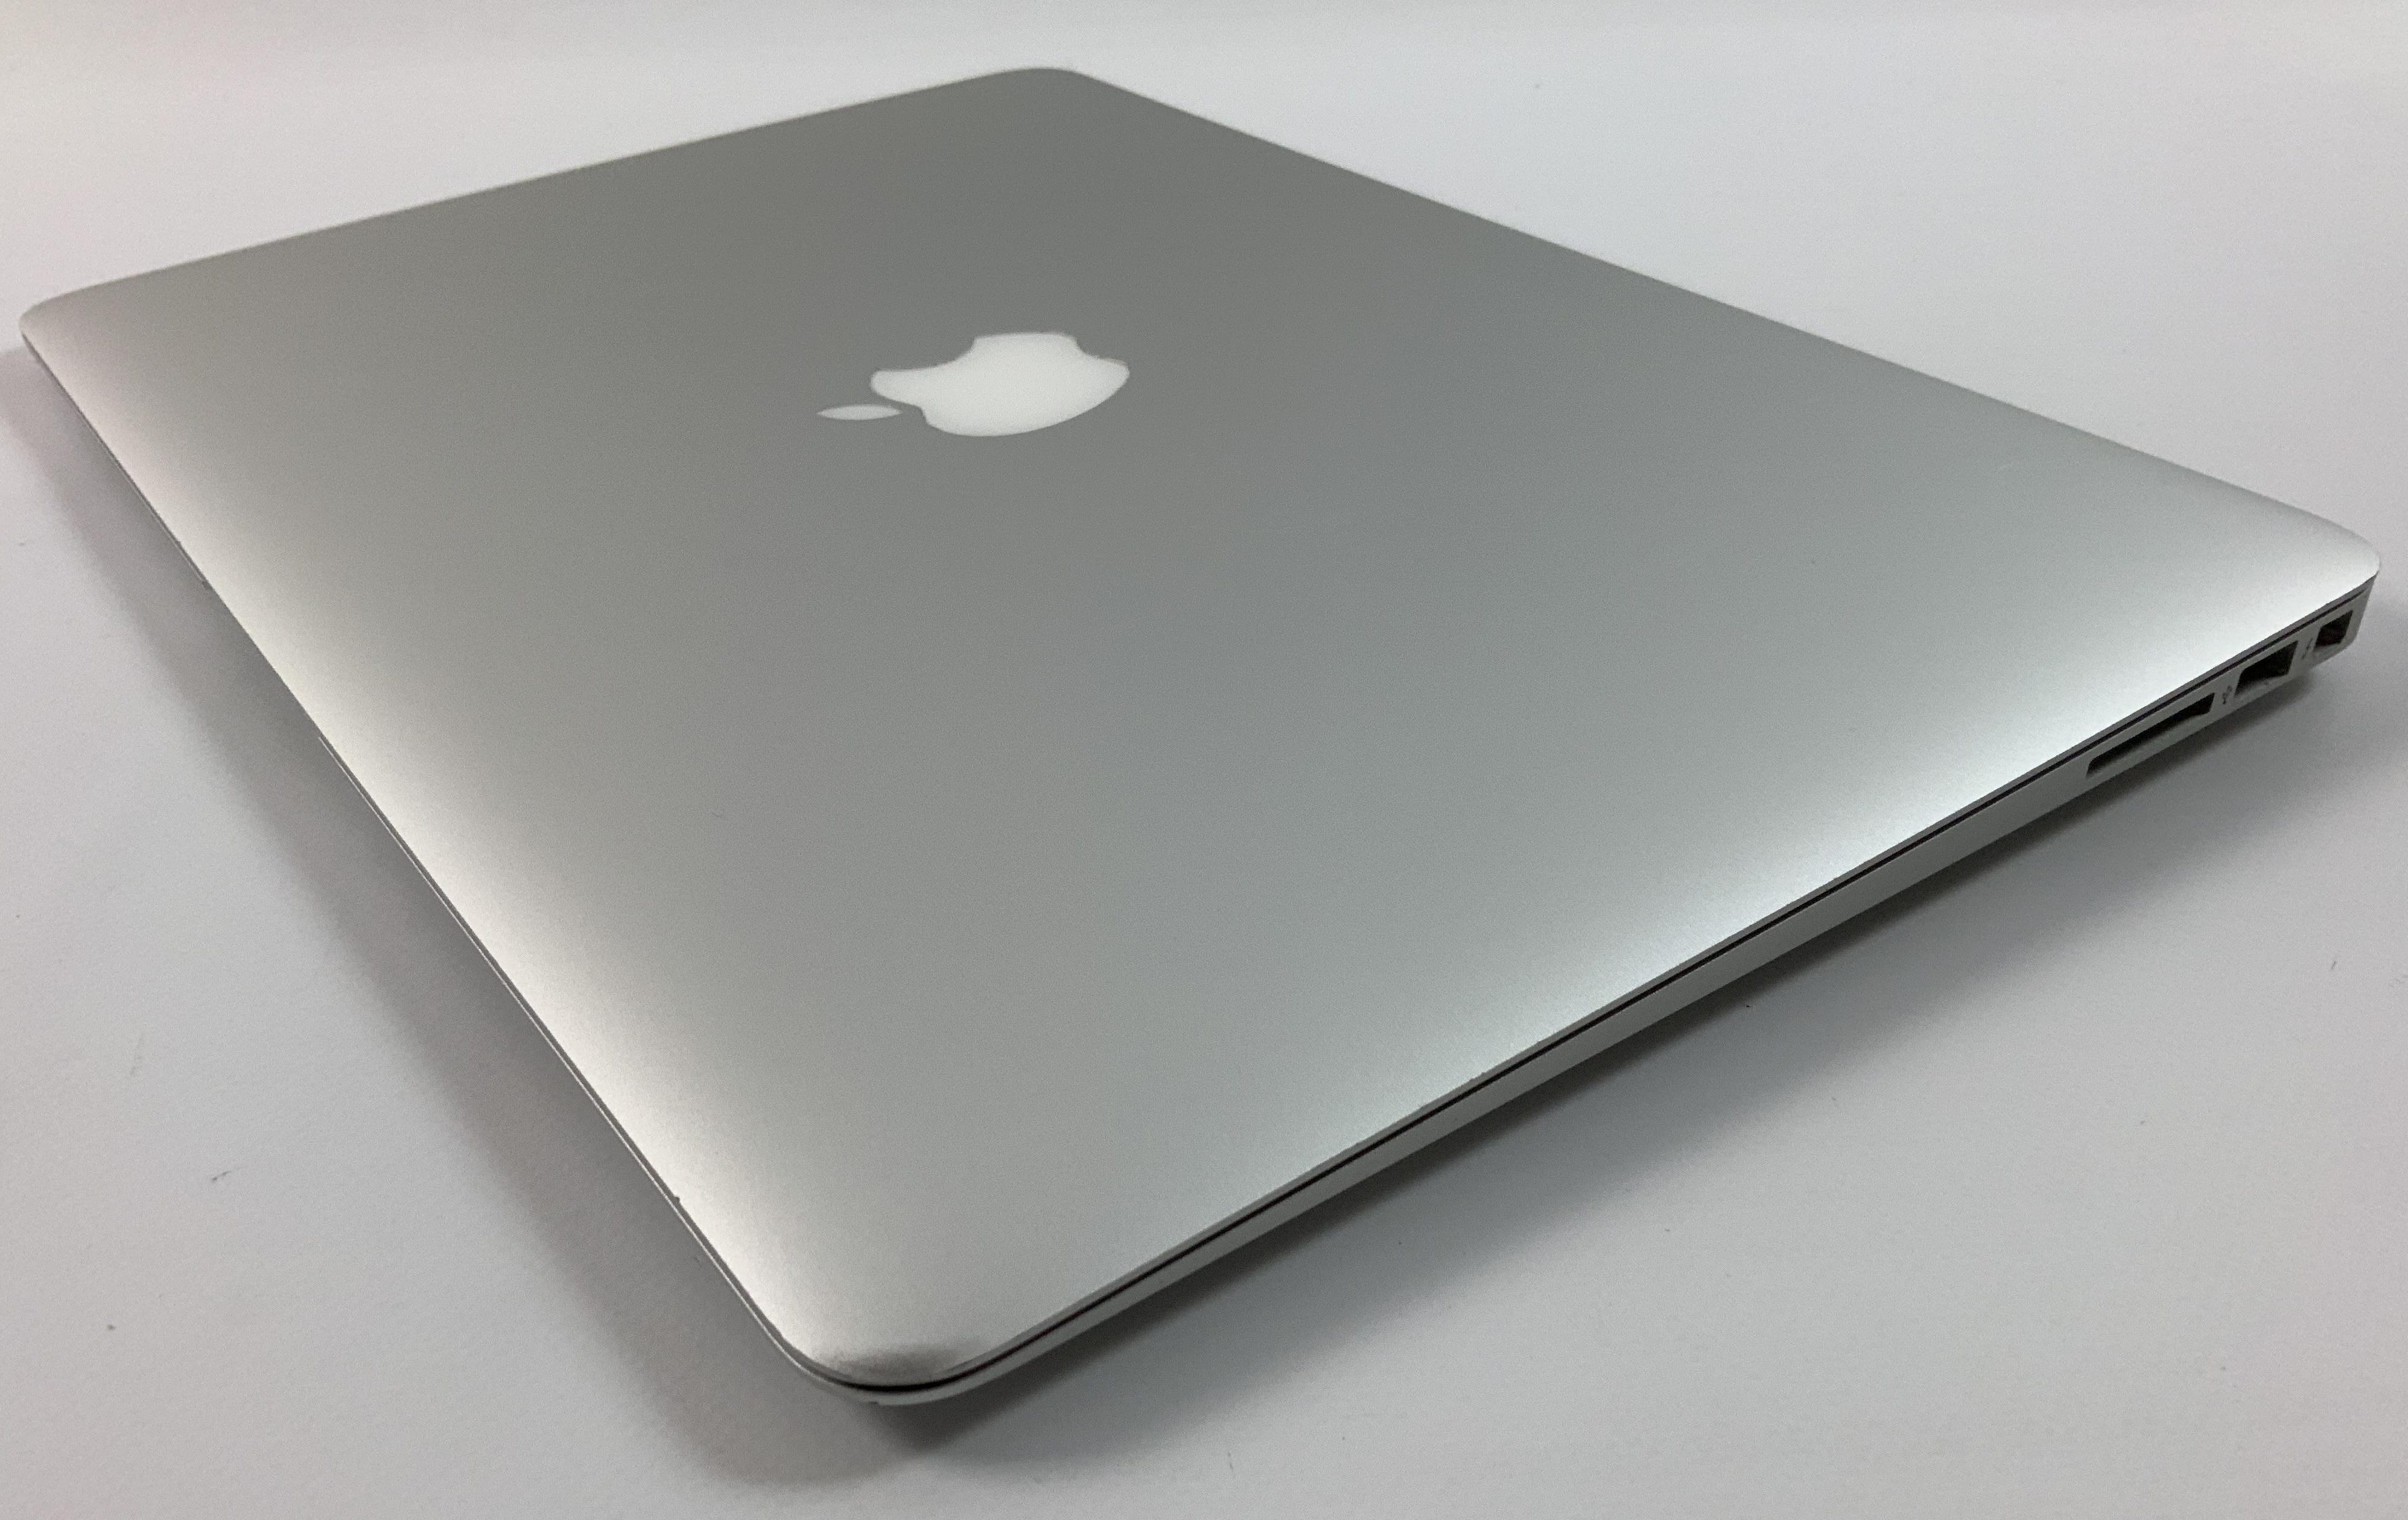 MacBook Air 13" Mid 2017 (Intel Core i5 1.8 GHz 8 GB RAM 256 GB SSD), Intel Core i5 1.8 GHz, 8 GB RAM, 256 GB SSD, immagine 3